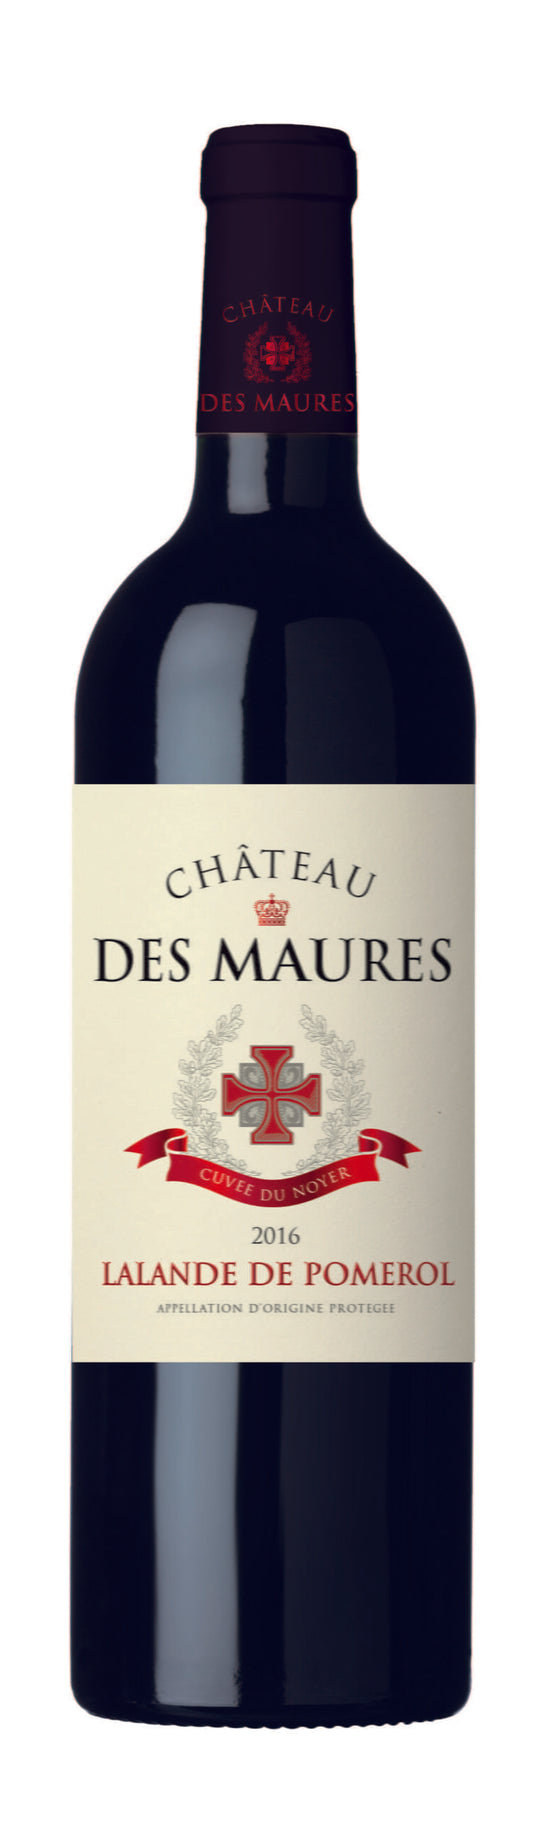 Petit Chateau Chateau des Maures 2019 Lalande de Pomerol (1x75cl) - TwoMoreGlasses.com